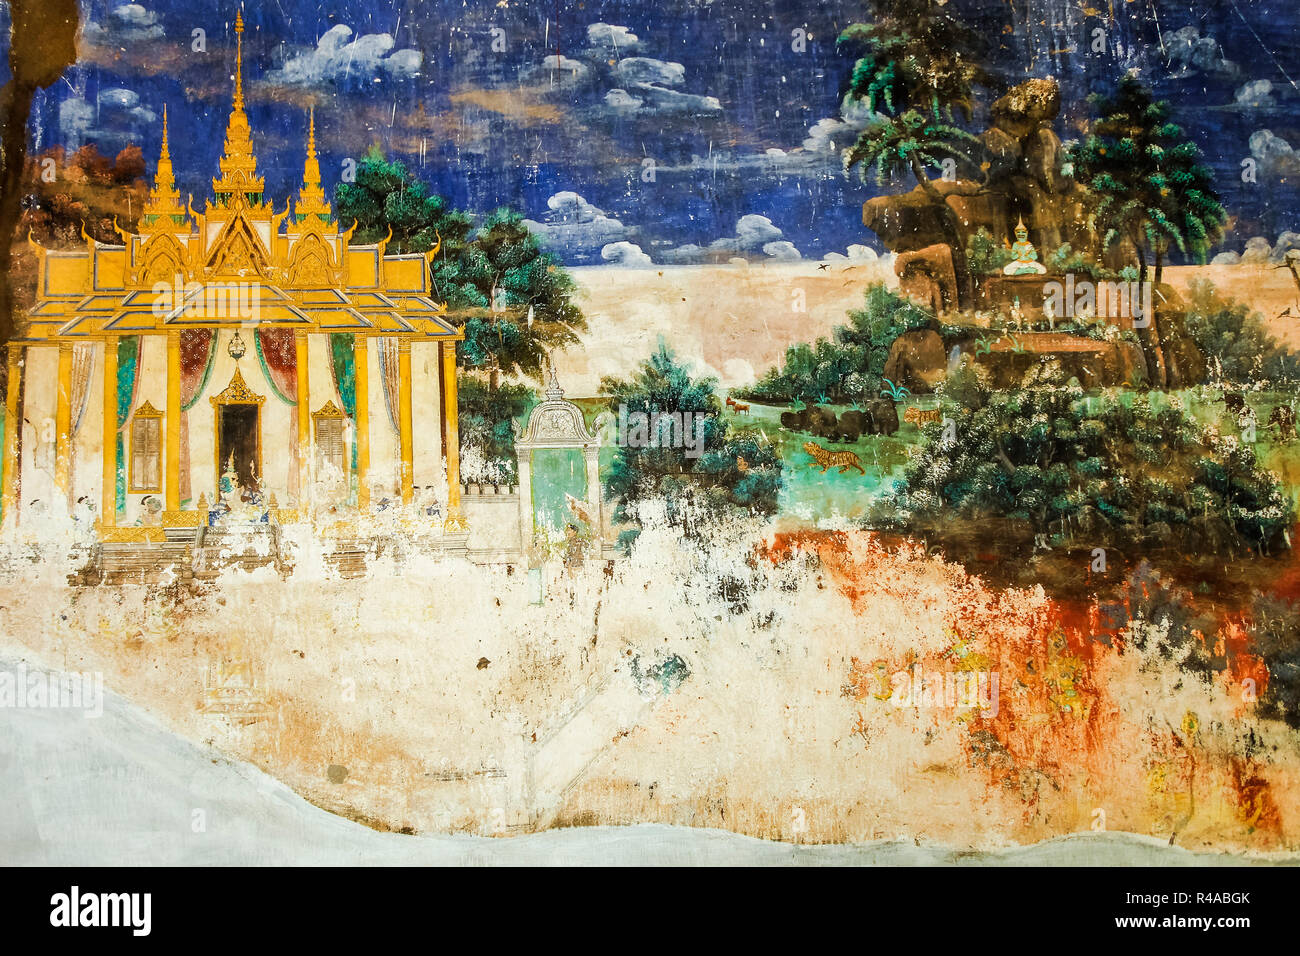 Reamker (la version khmère du Ramayana poème épique) fresque dans le Palais Royal de cloîtres. Palais Royal, Phnom Penh, Cambodge Banque D'Images